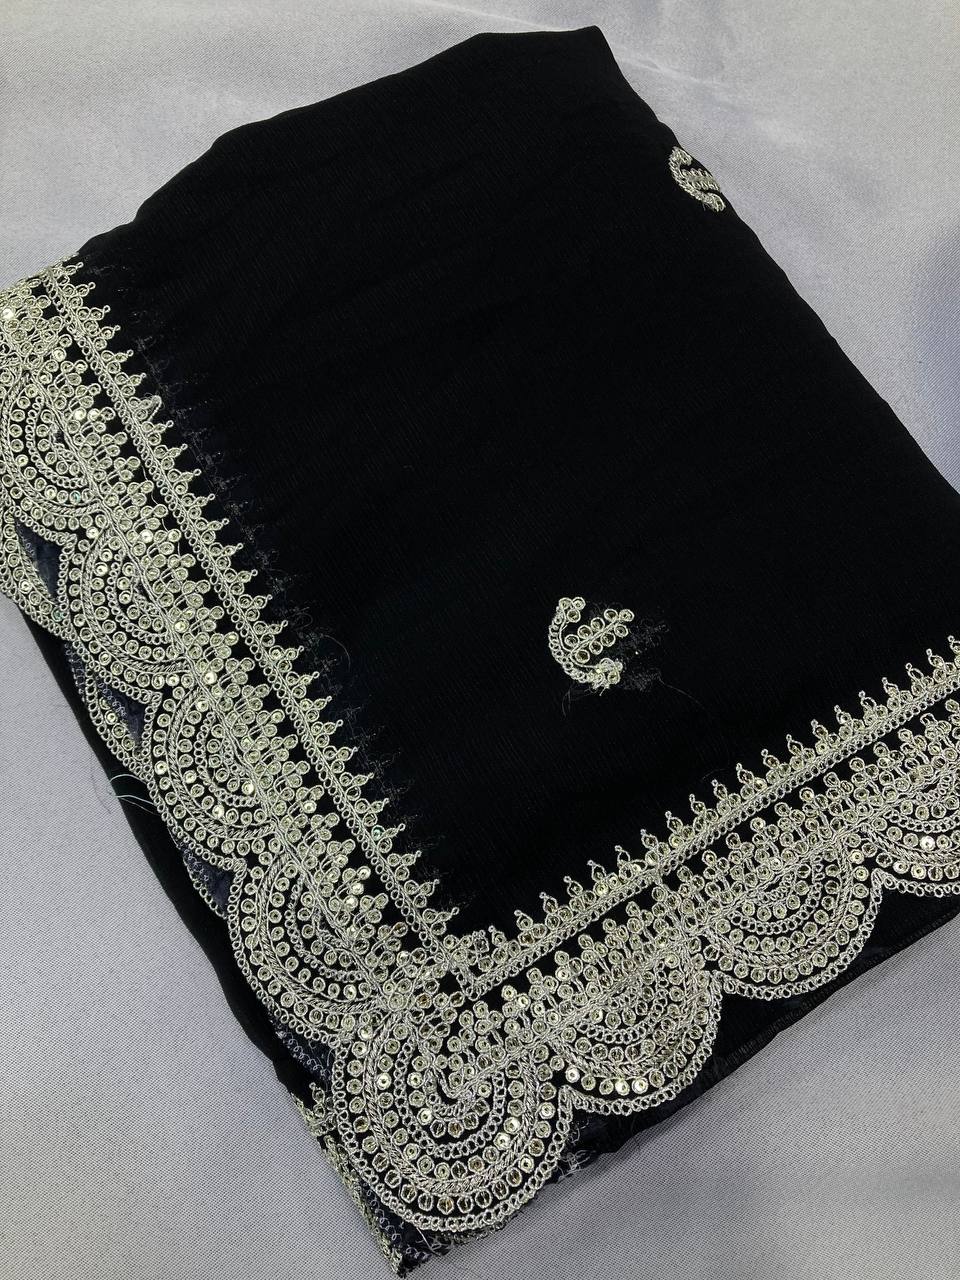 Zari Embroidered black Saree in Zomato Chiffon Silk with Cutwork Border - Perfect for Weddings Colorful Saree